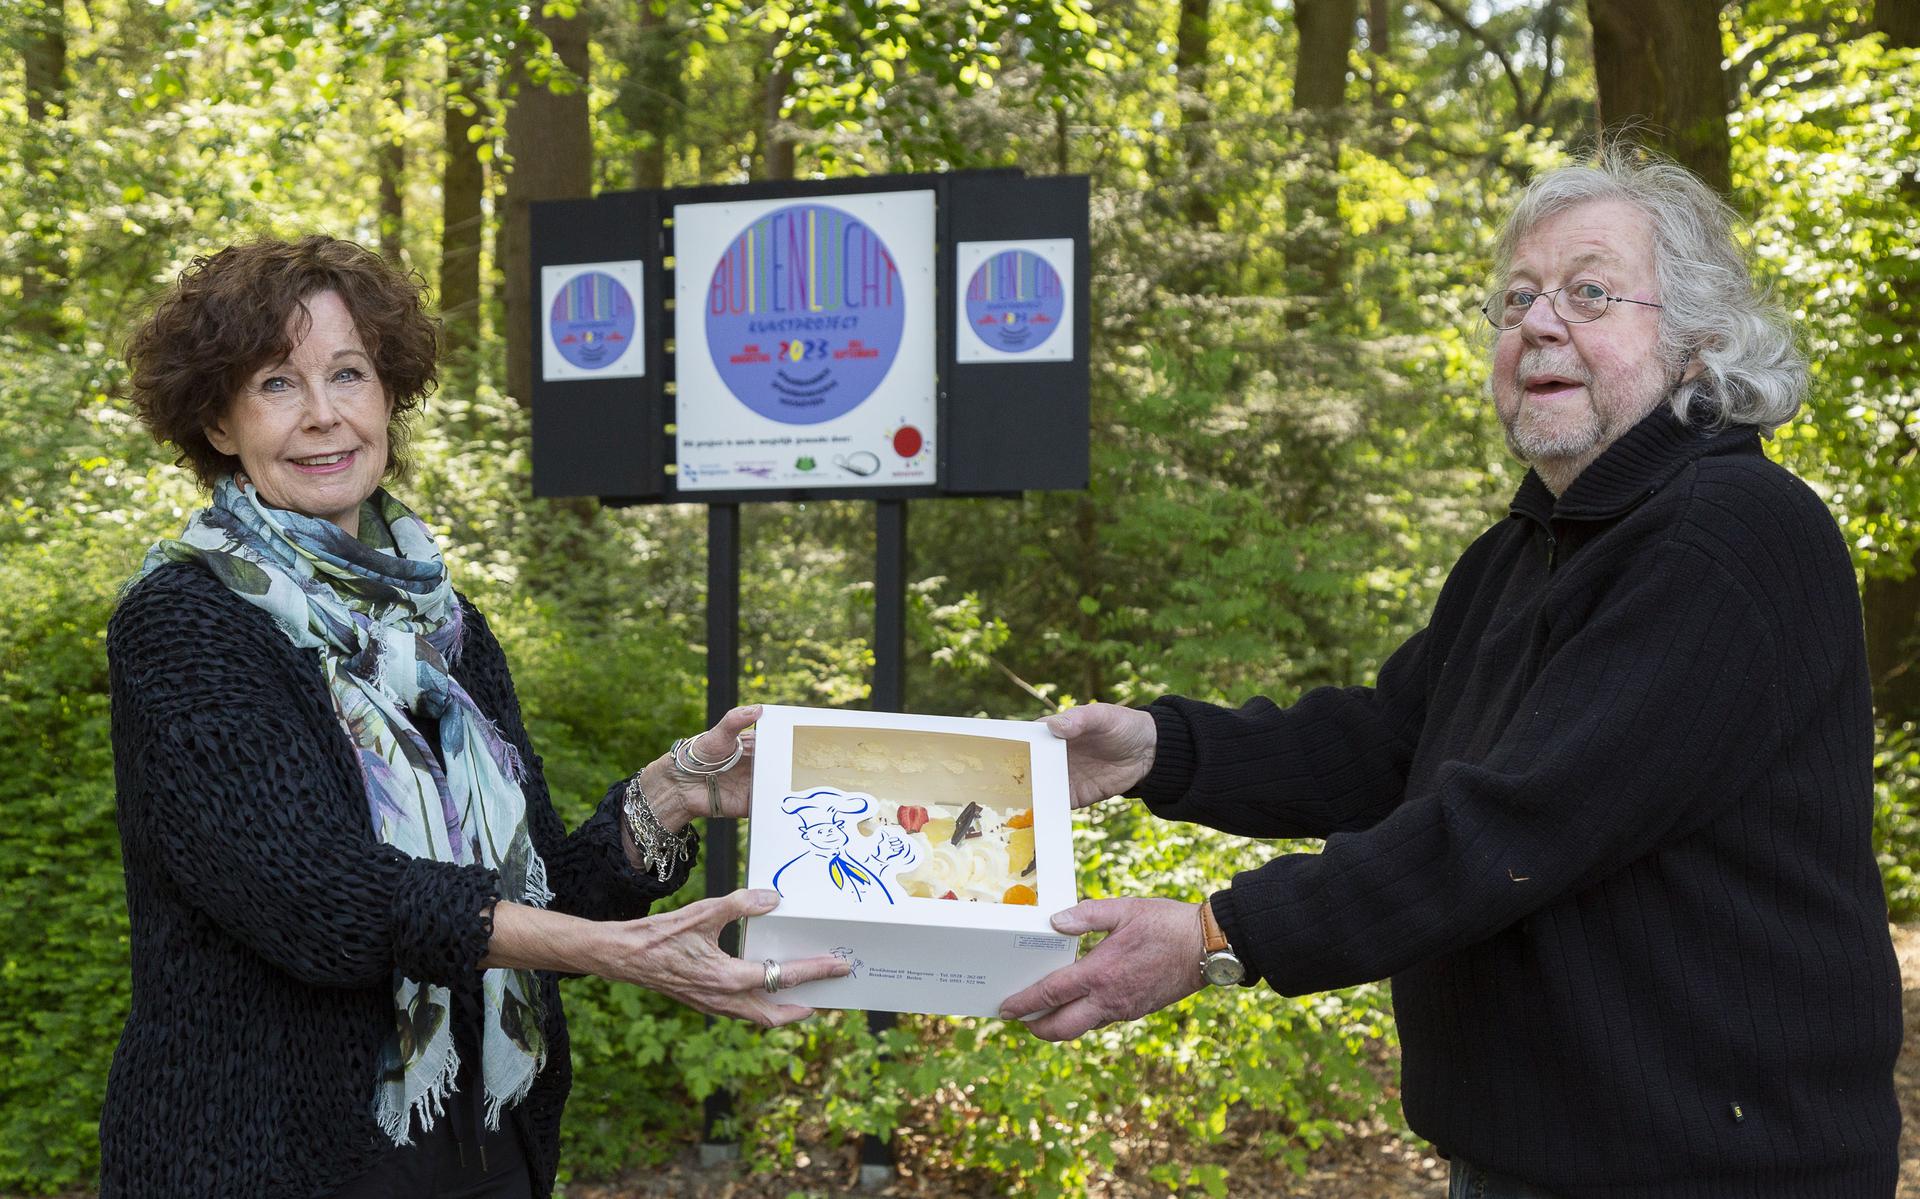 Sejo Slingenberg en Jerry Bisschop krijgen taart voor kunsttentoonstelling in het Spaarbankbos.